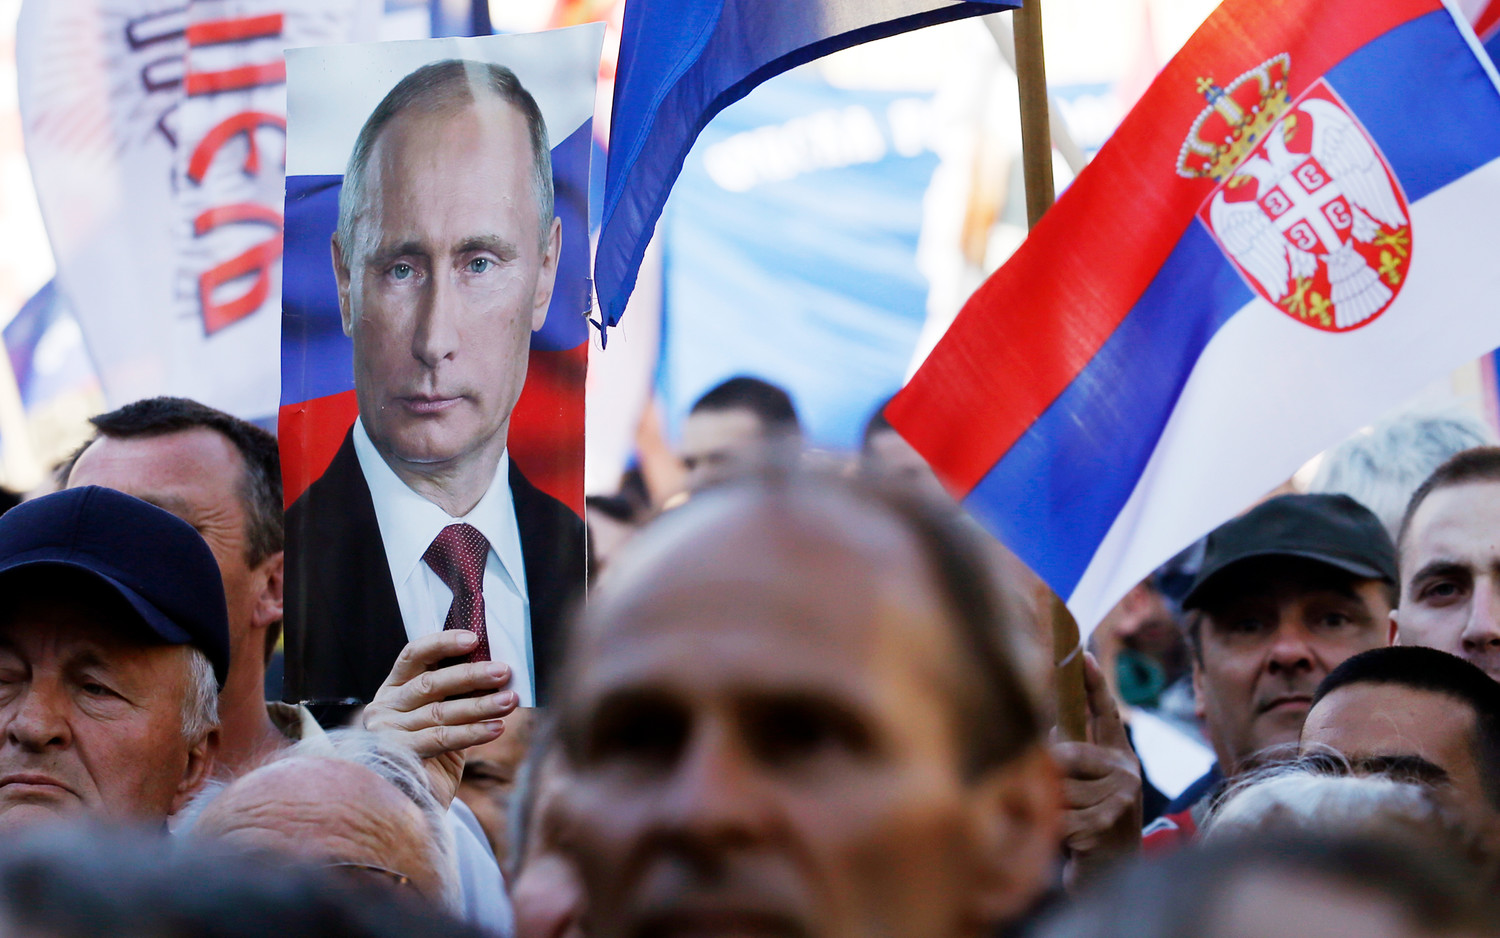 Сербия не будет вводить санкции против России